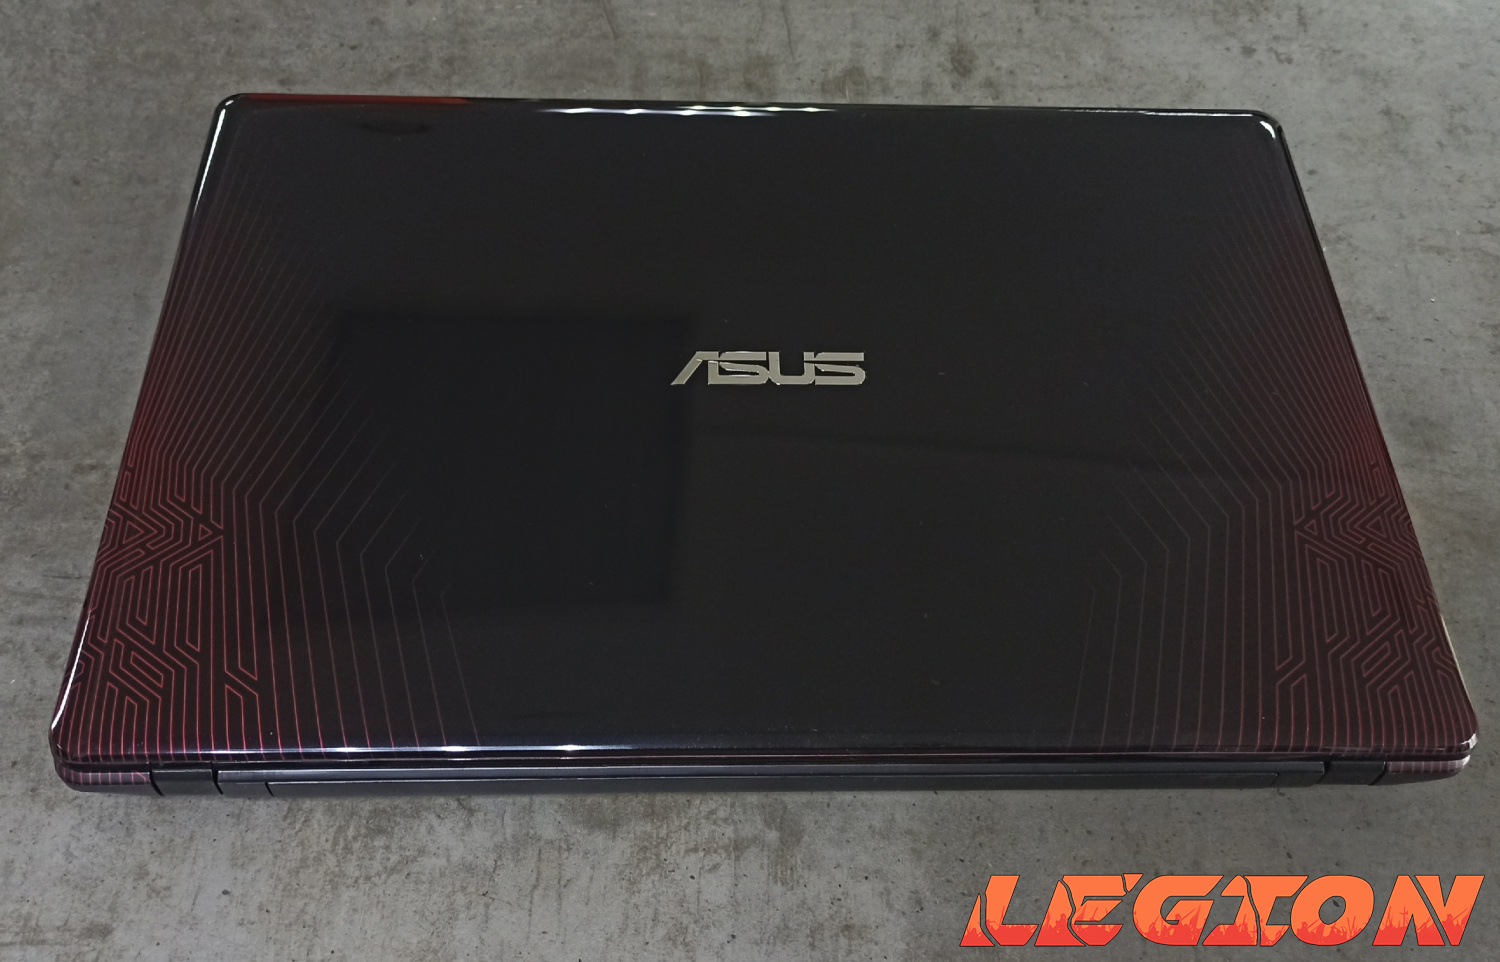 Asus i5 4200H/8GB/GTX 950M/500GB/15.6 FullHD